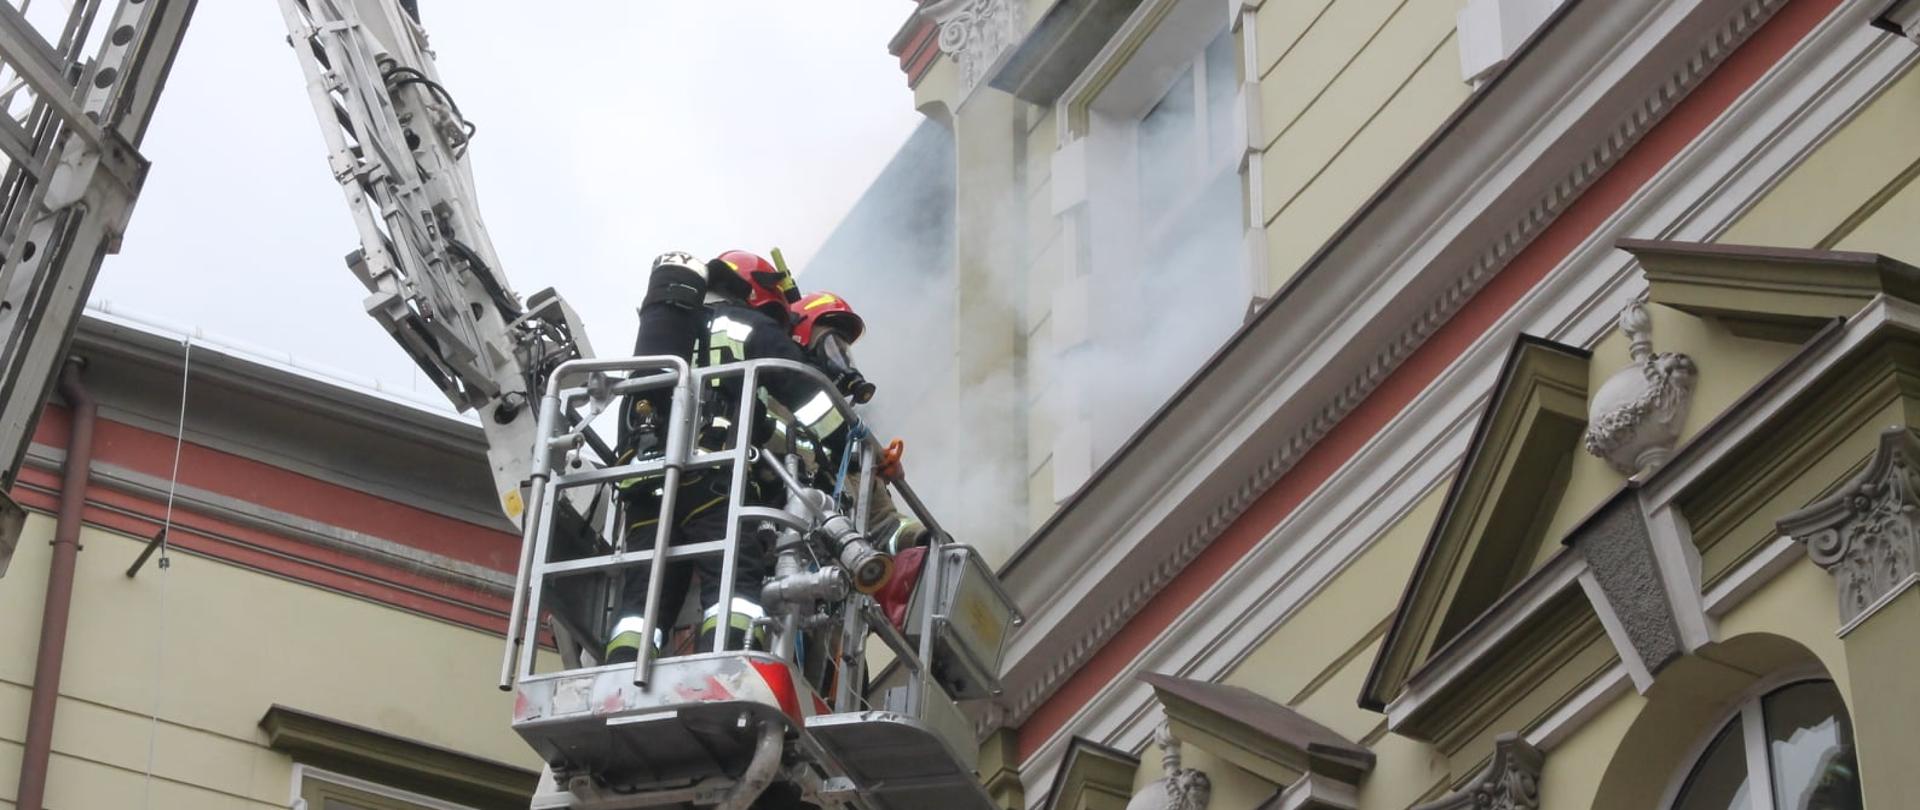 Na zdjęciu widać dwóch strażaków w koszu ratowniczym, ubranych w sprzęt ochrony układu oddechowego, którzy podjeżdżają pod okno starostwa powiatowego, z którego wydobywa się dym.